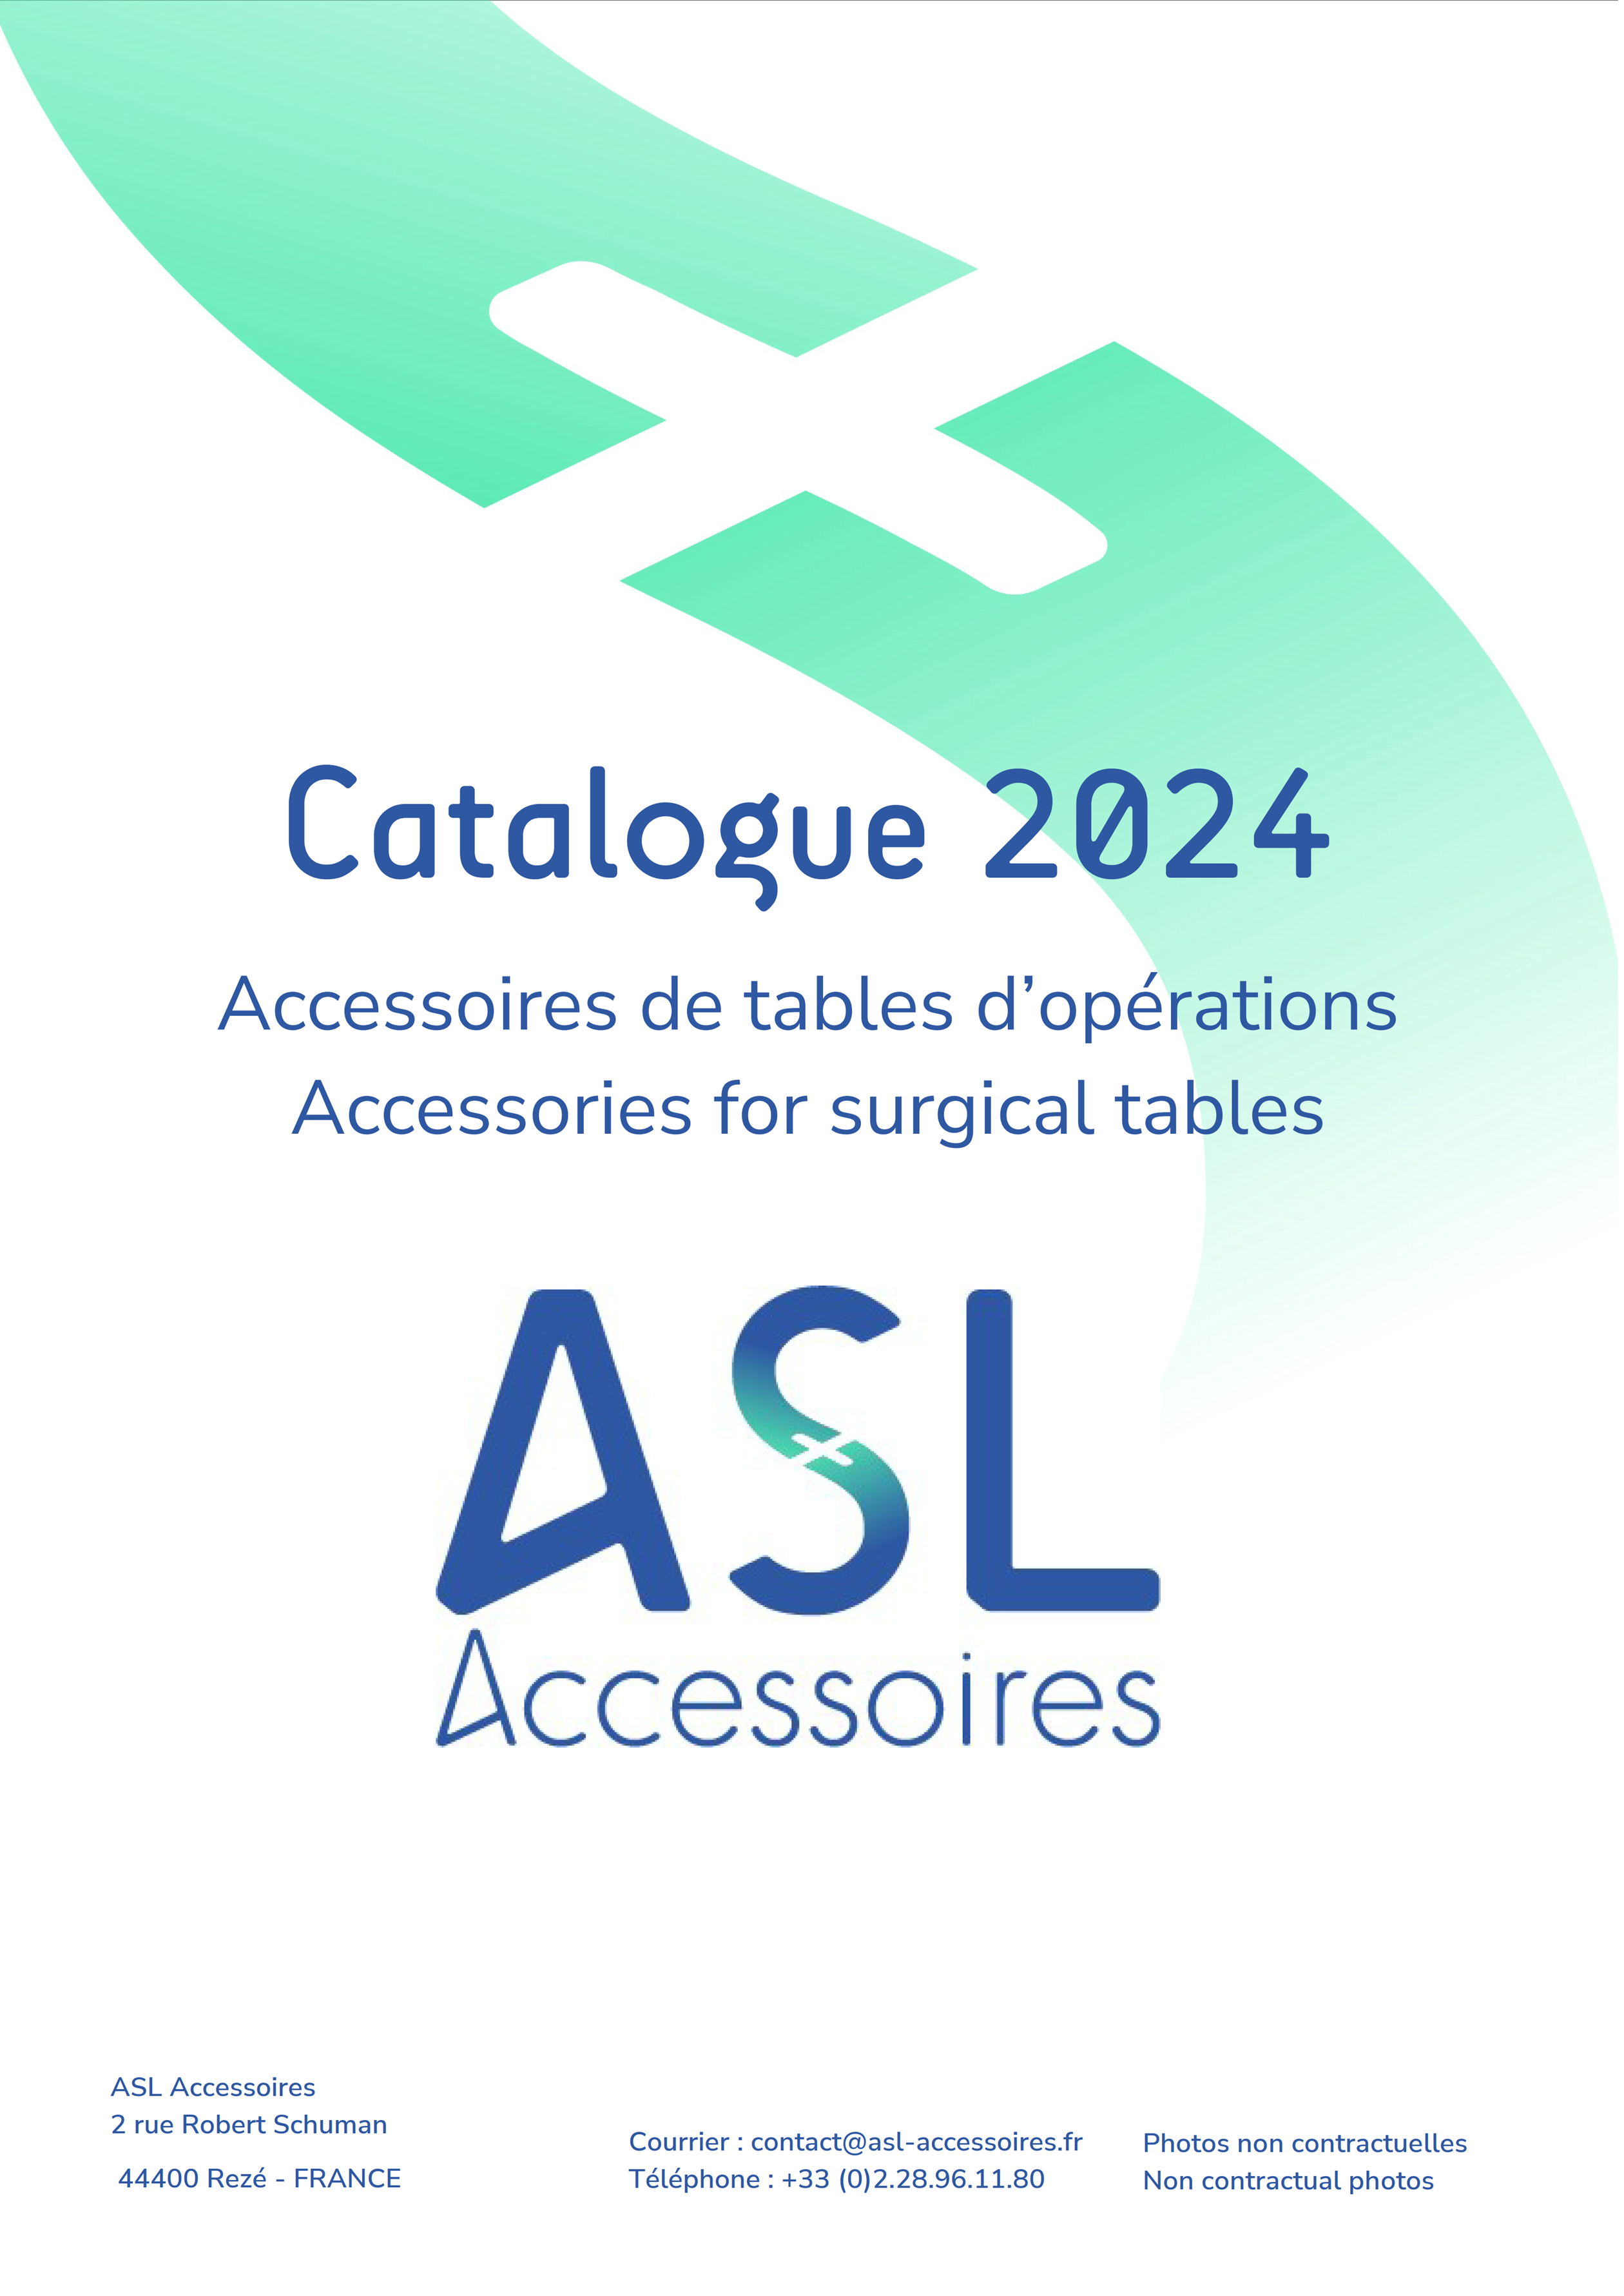 Catalogue accessoires de tables d'opération 2020 - ASL Accessoires